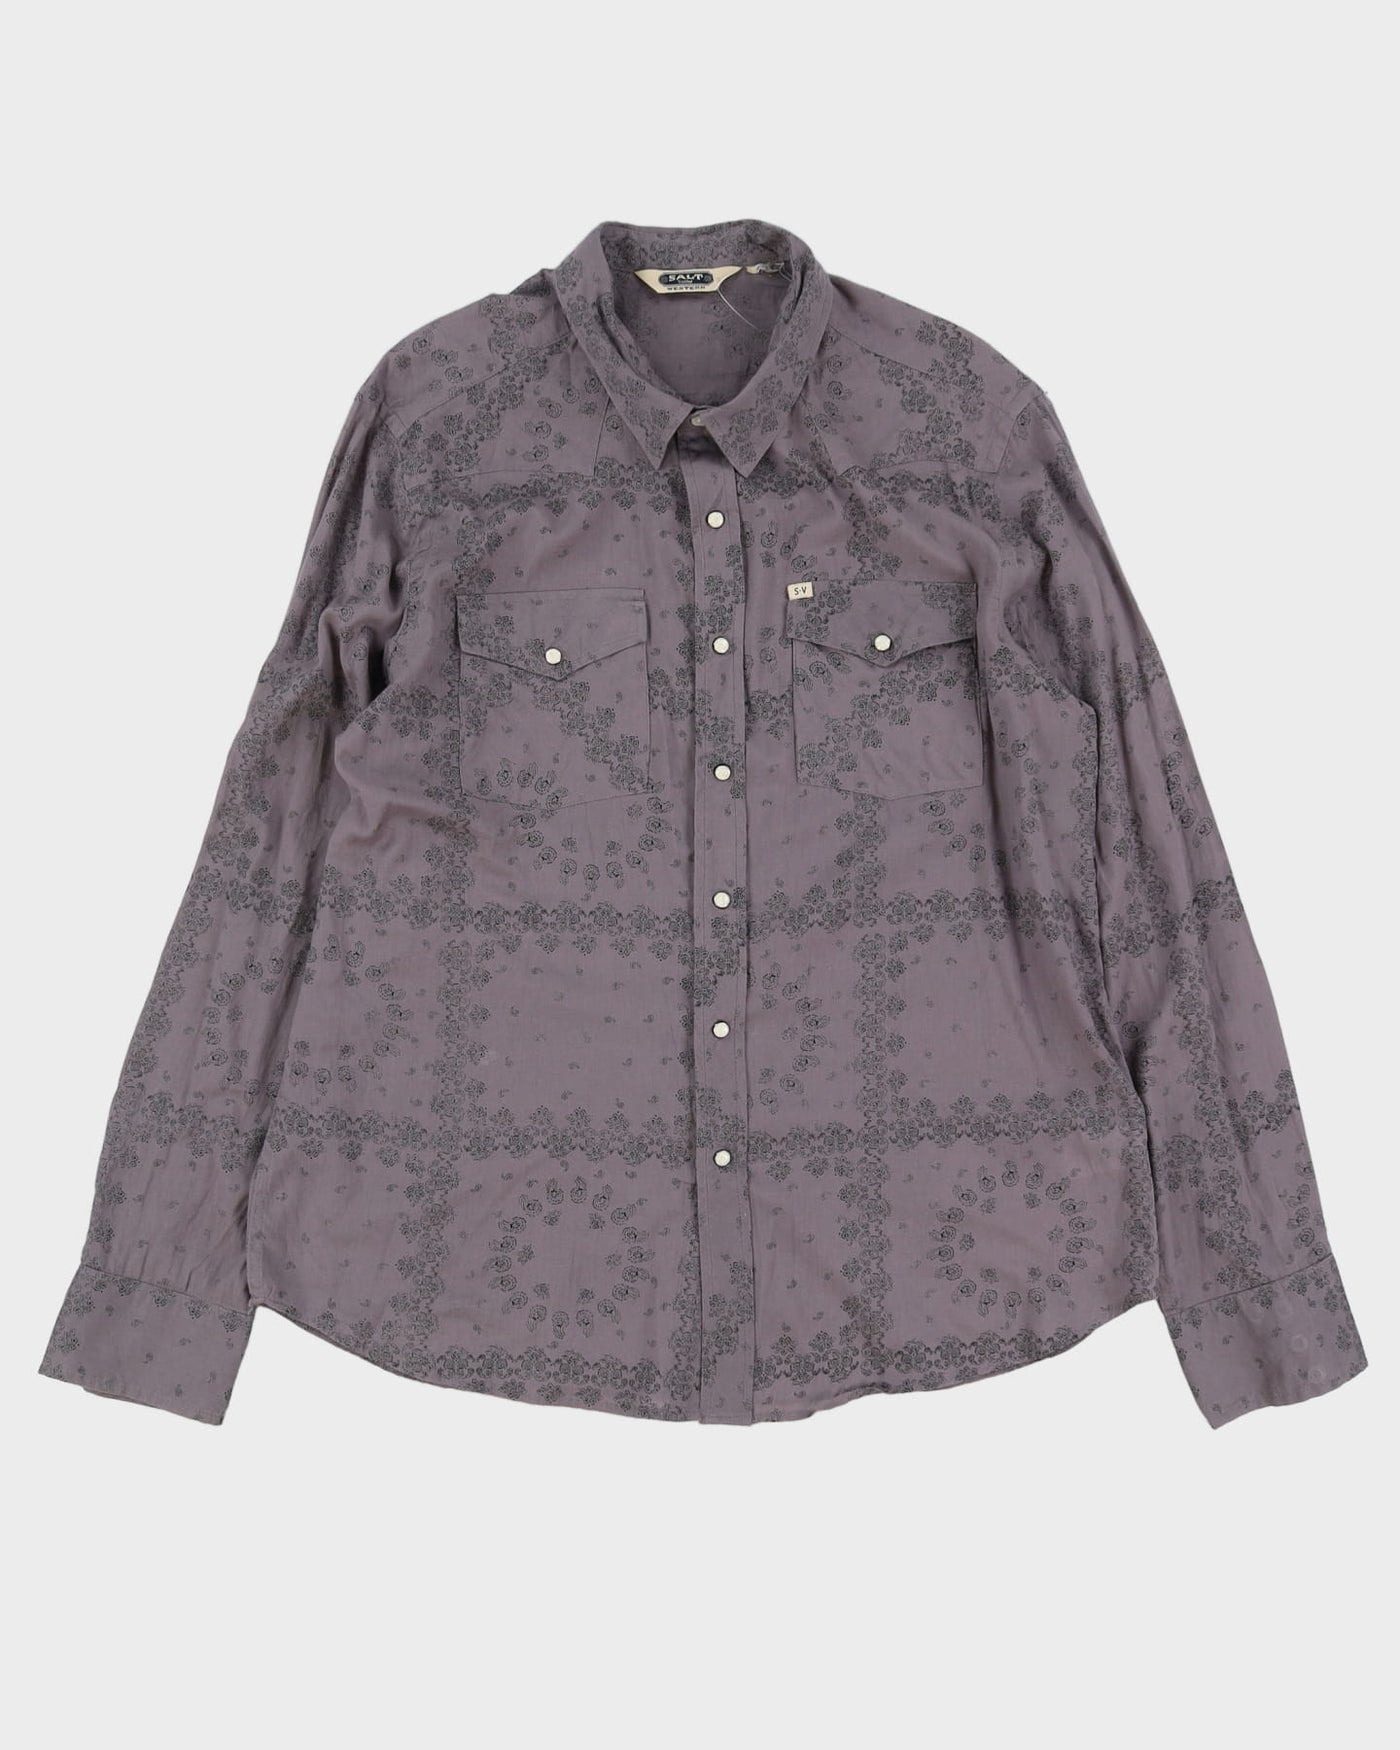 80s Salt Valley Western Long-Sleeve Button-Up Shirt - XL